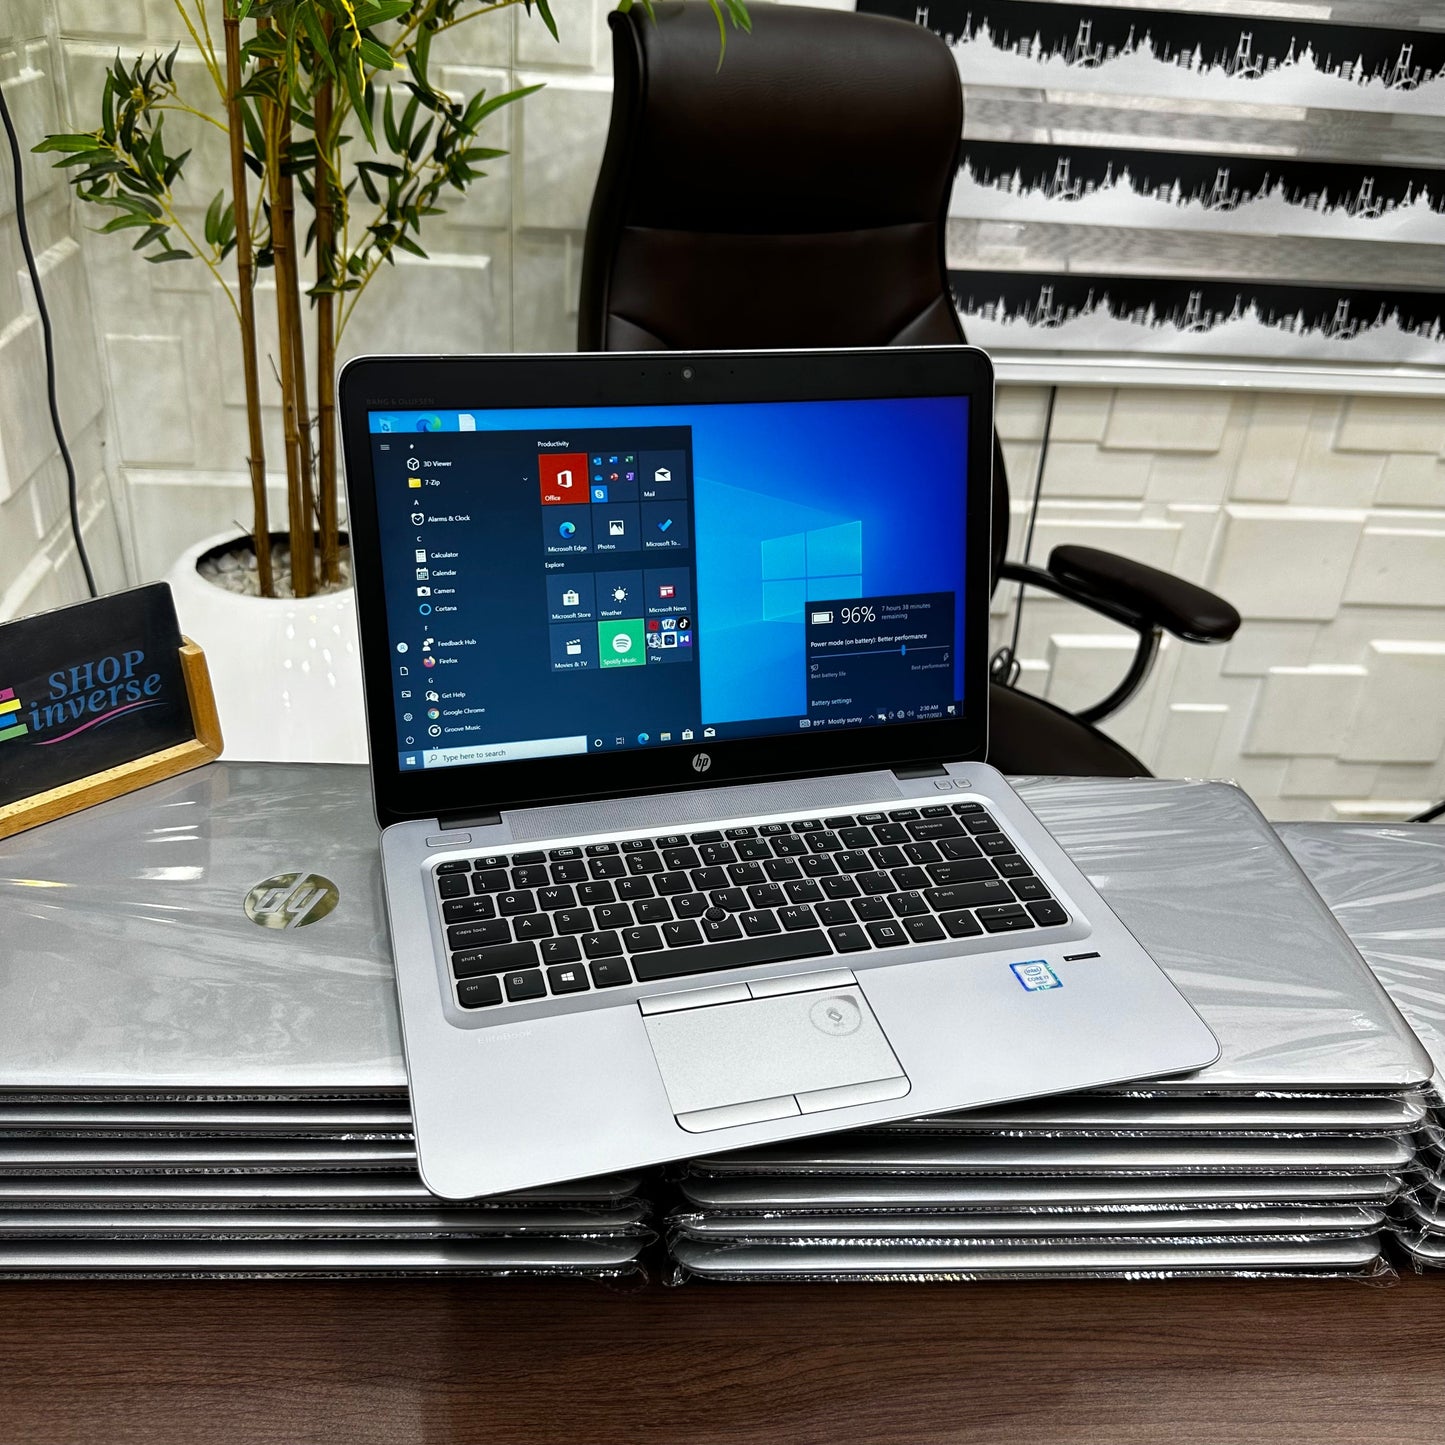 HP EliteBook 840 G3 - 6th Gen. Intel Core i5 - 256GB SSD - 8GB RAM - 4GB Total Graphics - Keyboard Light